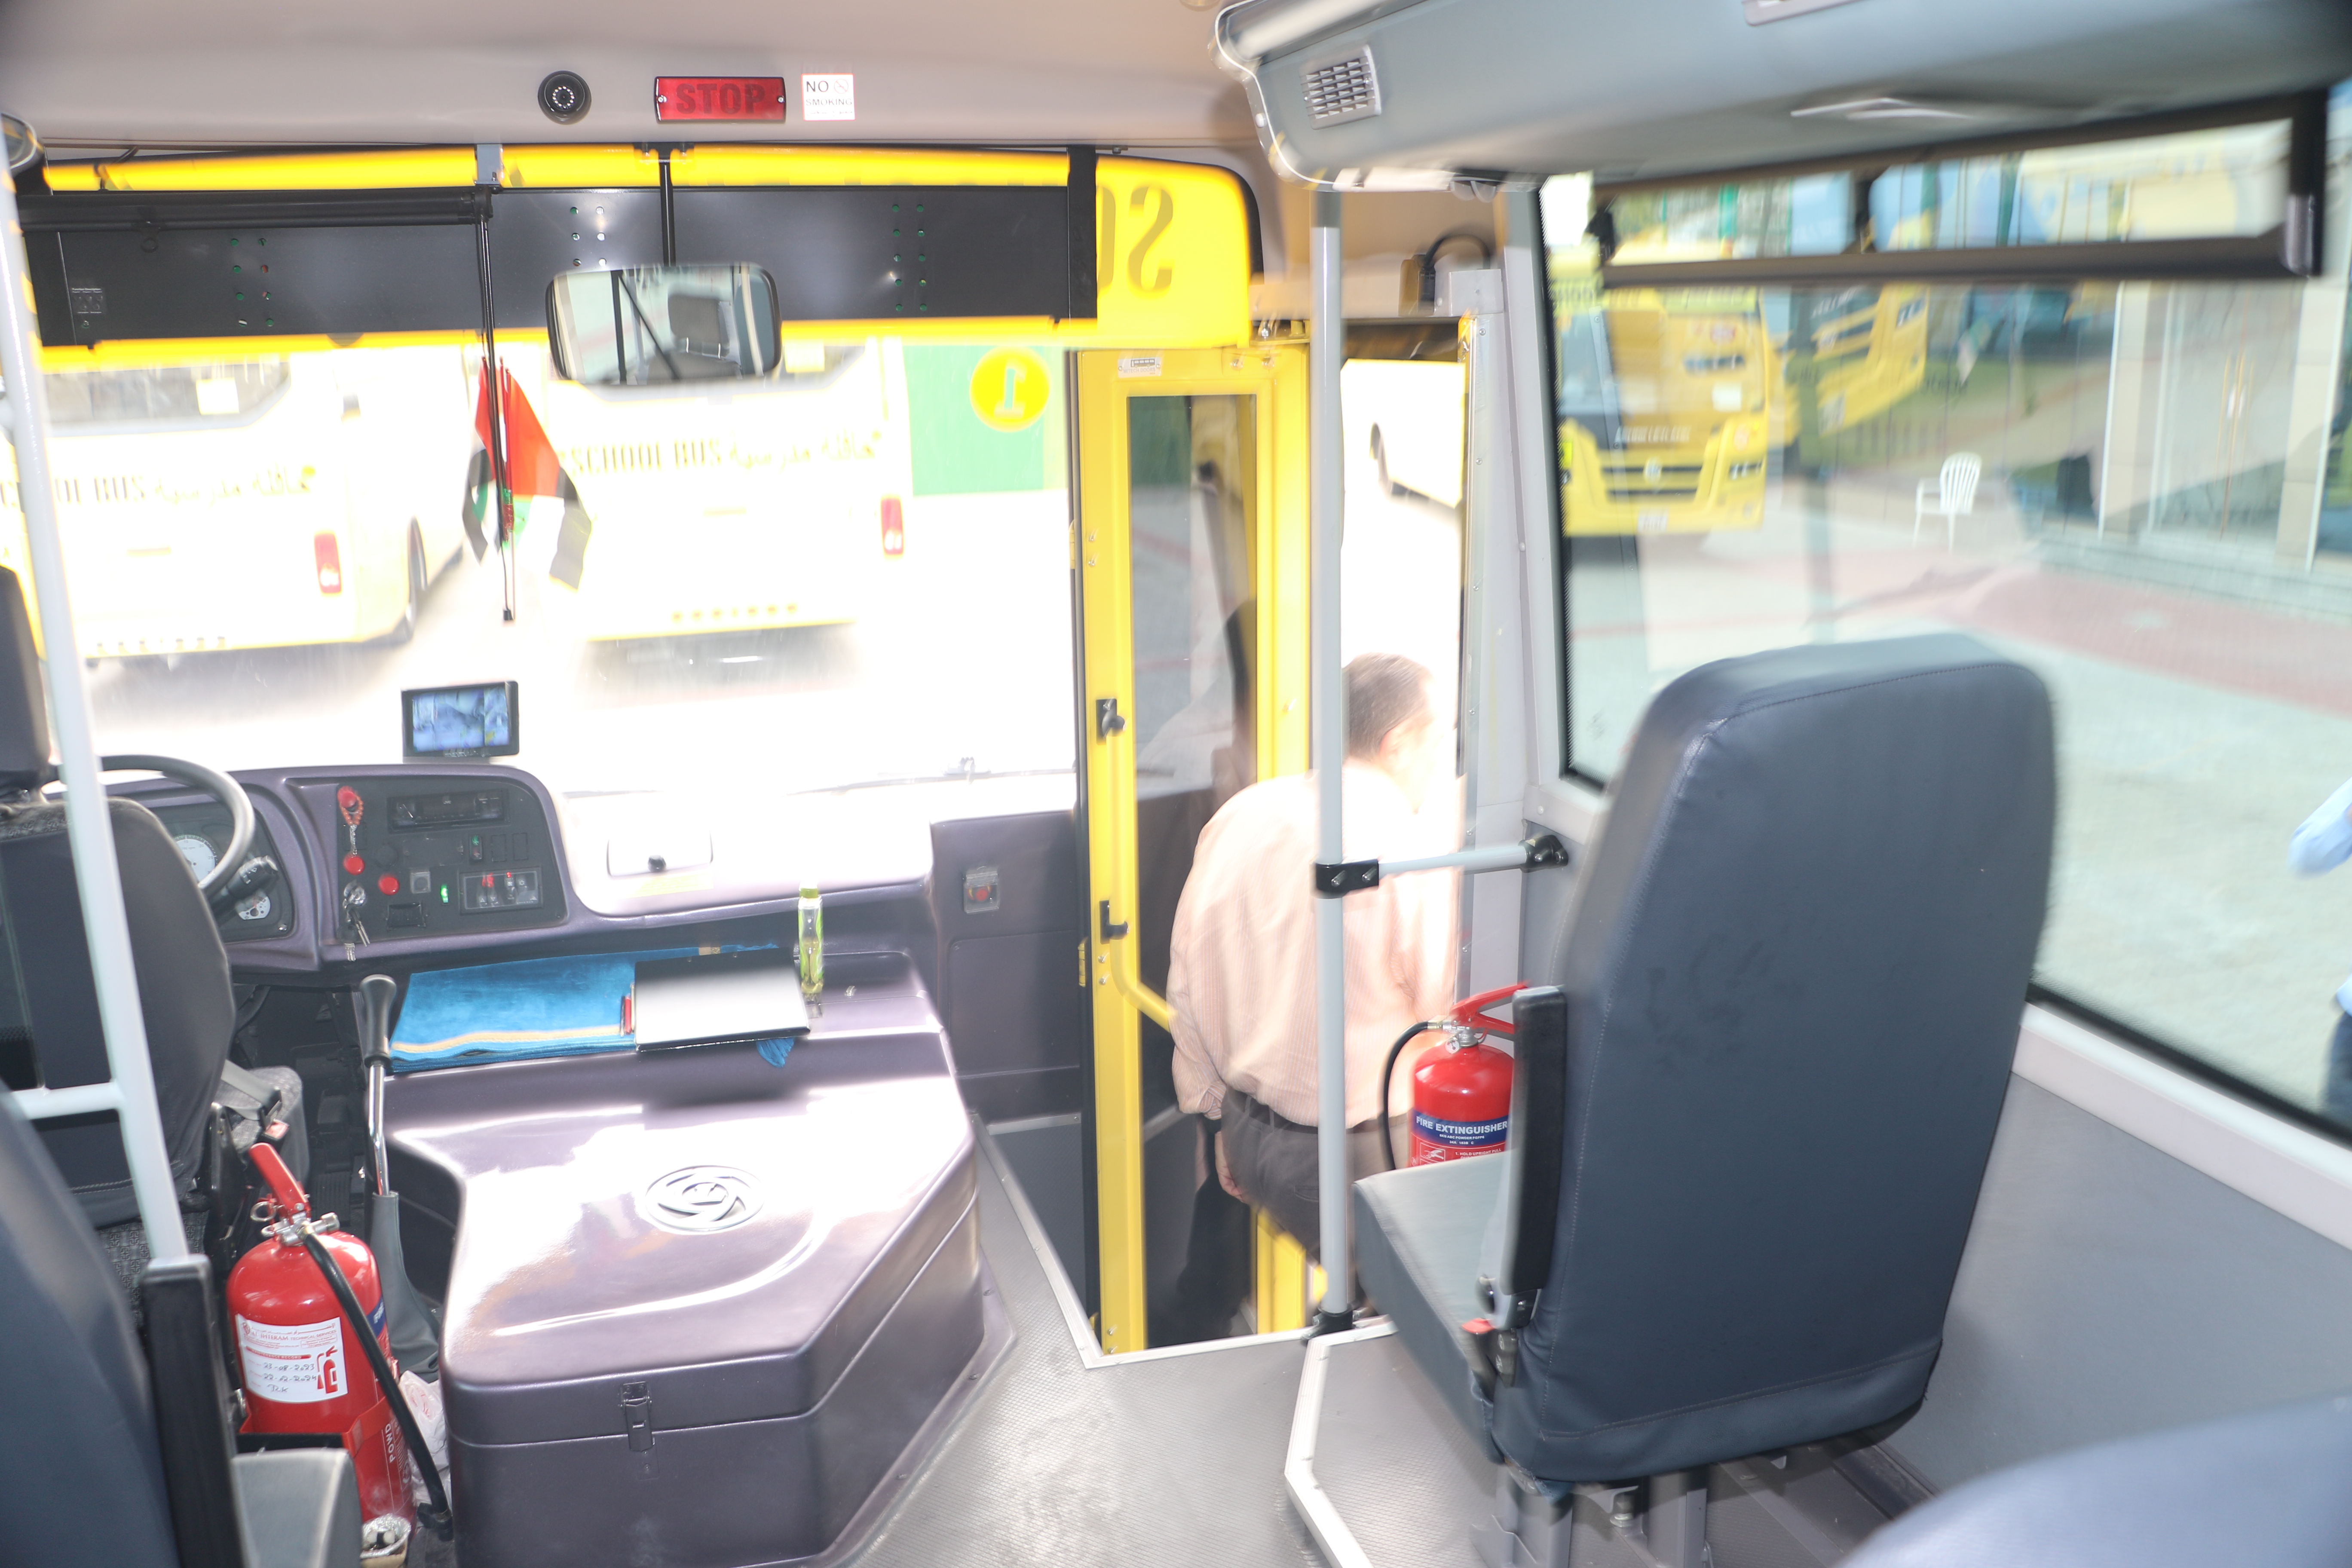 تدريب على إخلاء الحافلة المدرسية في حالة الطوارئ